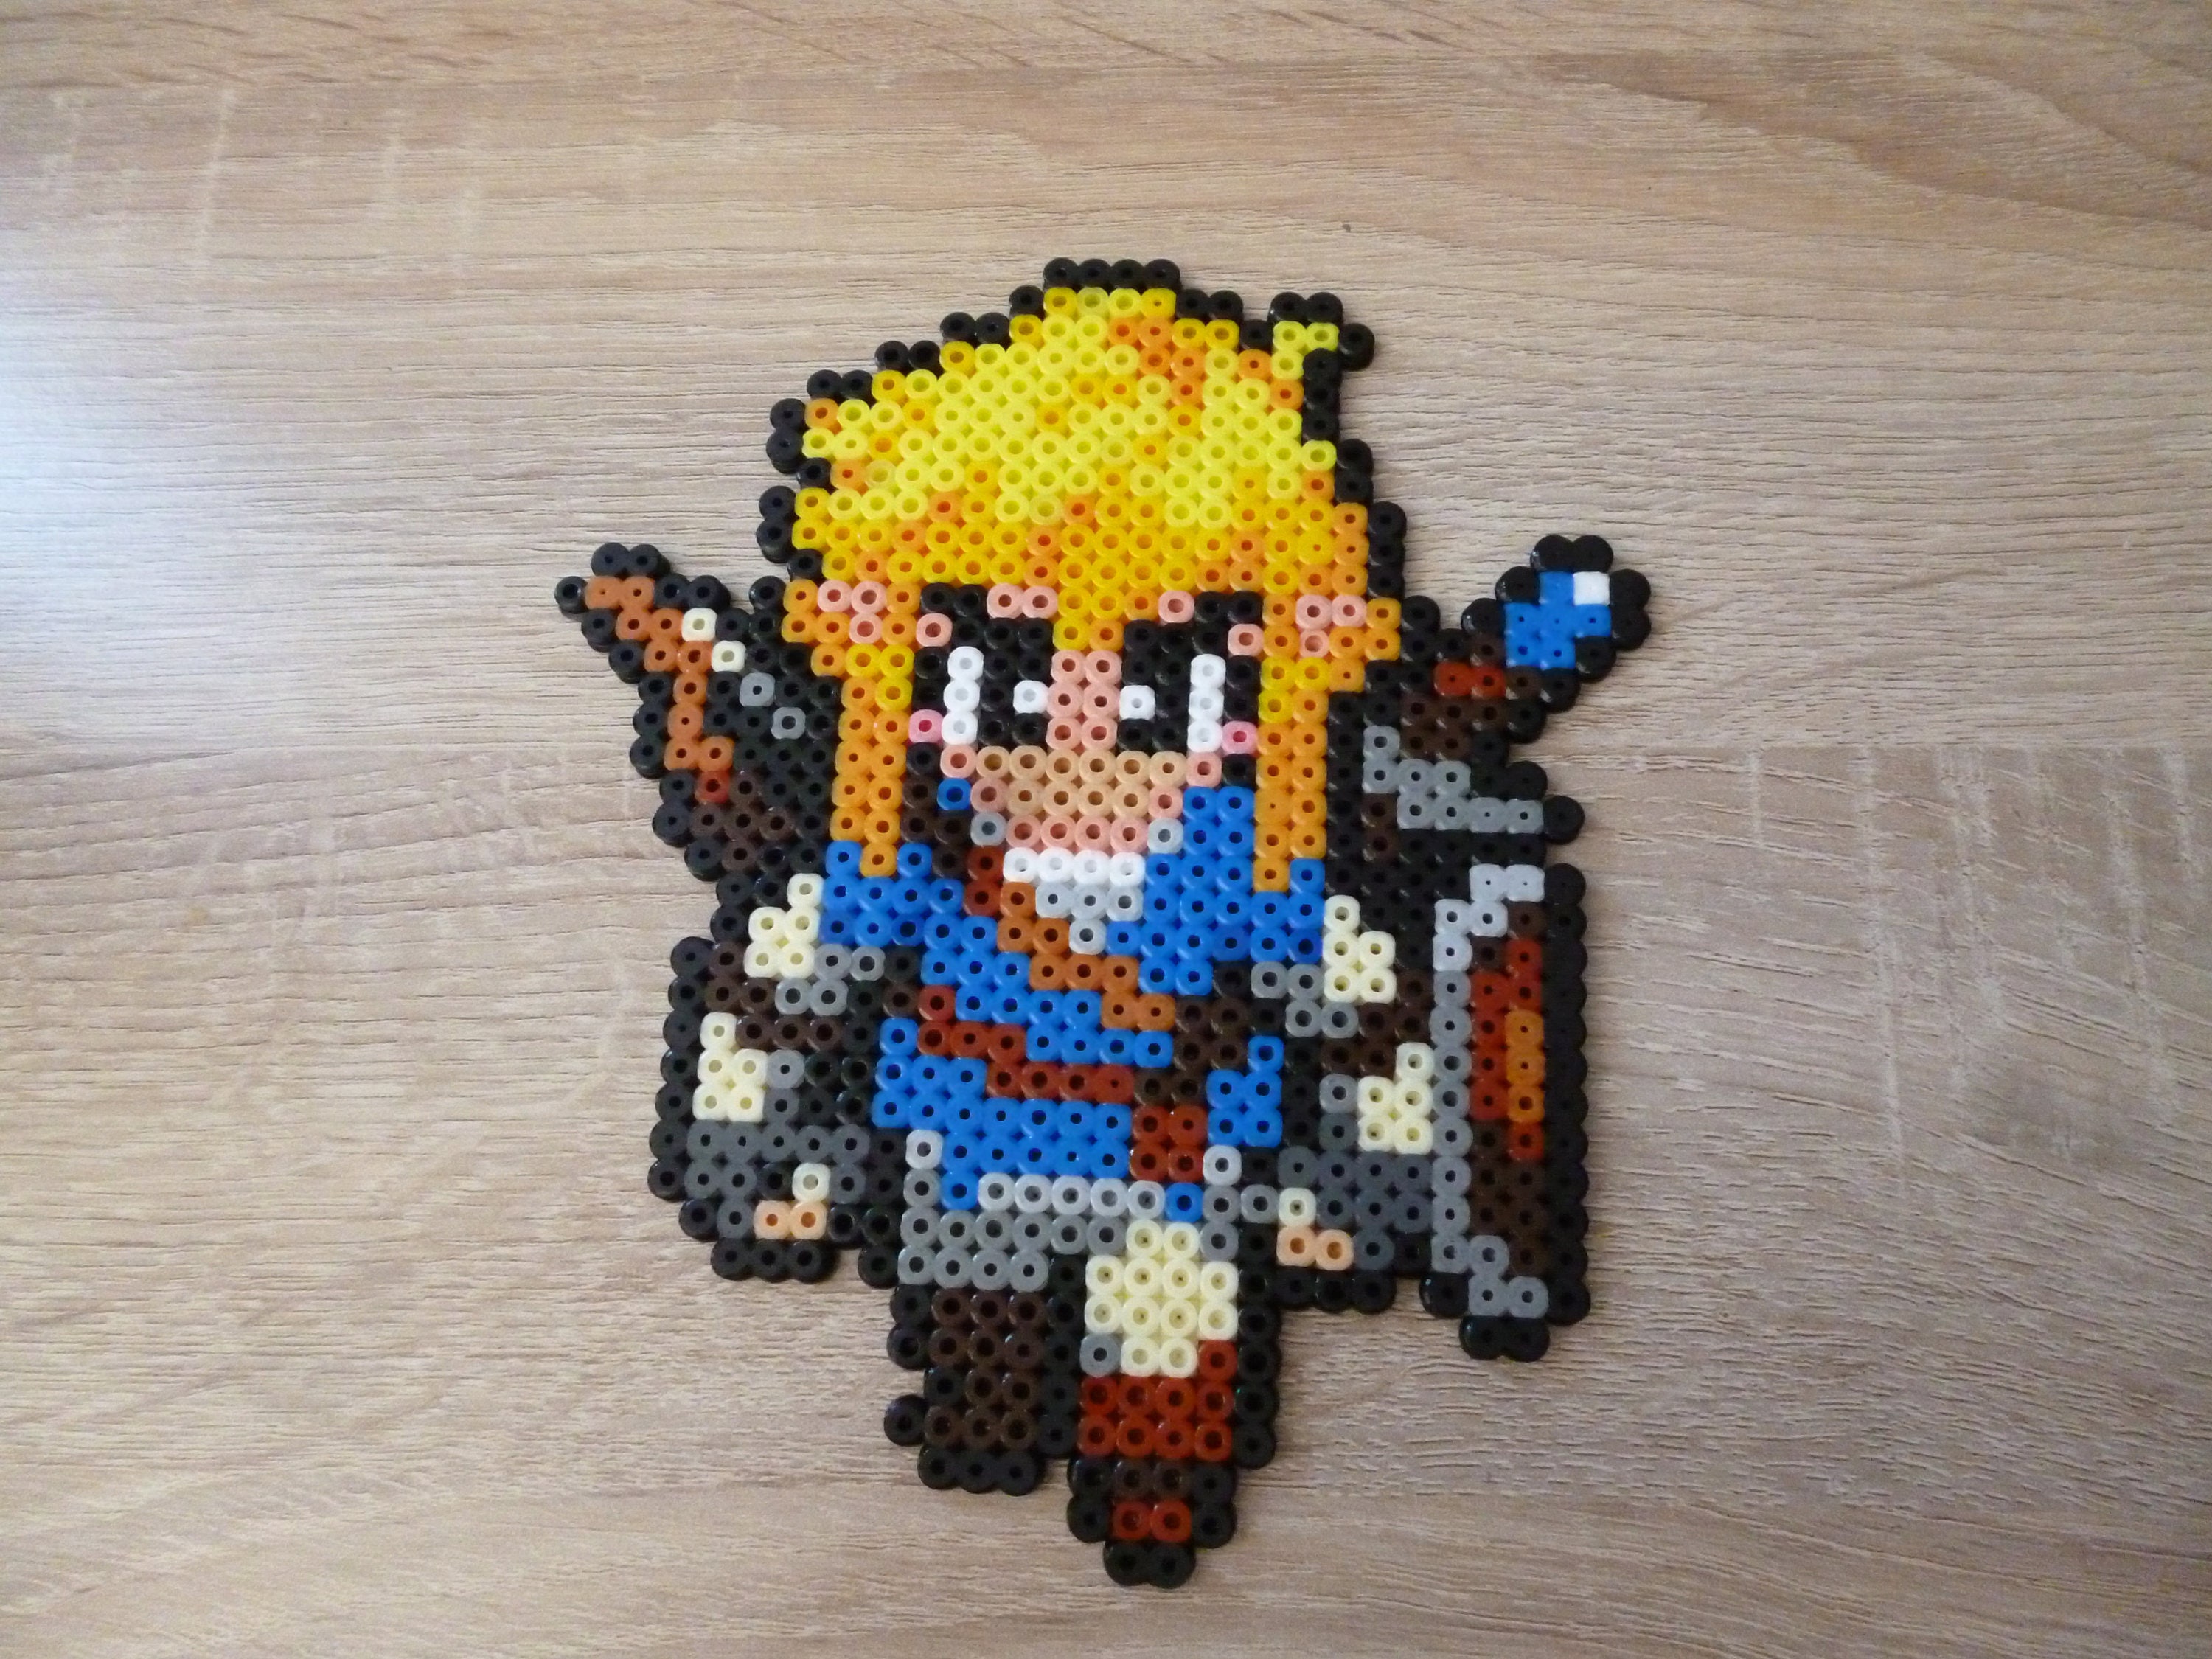 Zelda Pixel Art Template